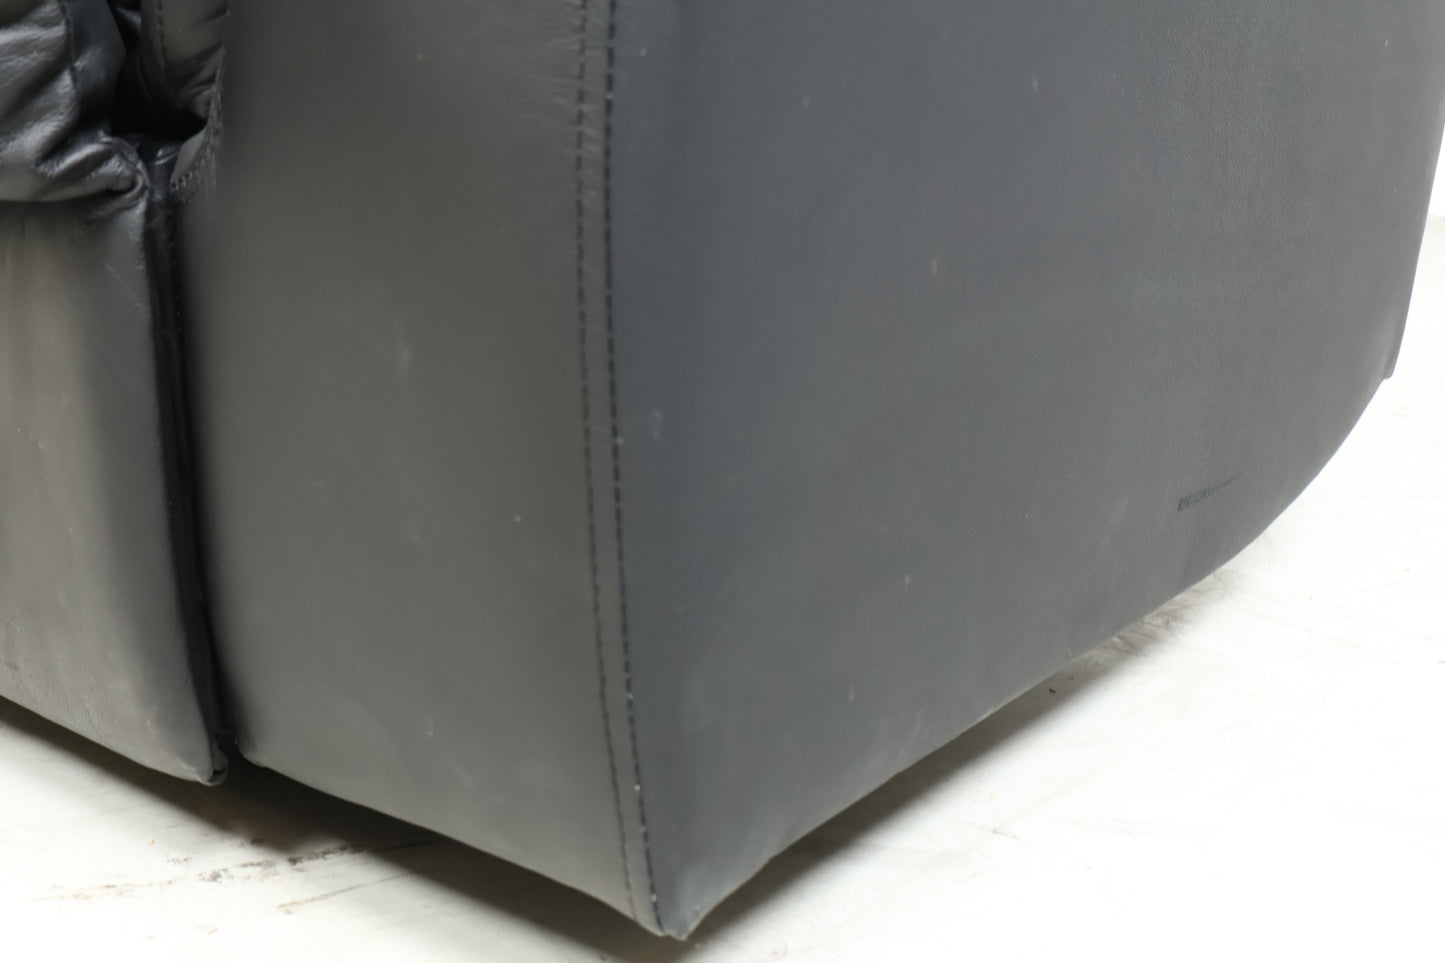 Nyrenset | Mayfield recliner lenestol fra A-Møbler i sort hud/PVC